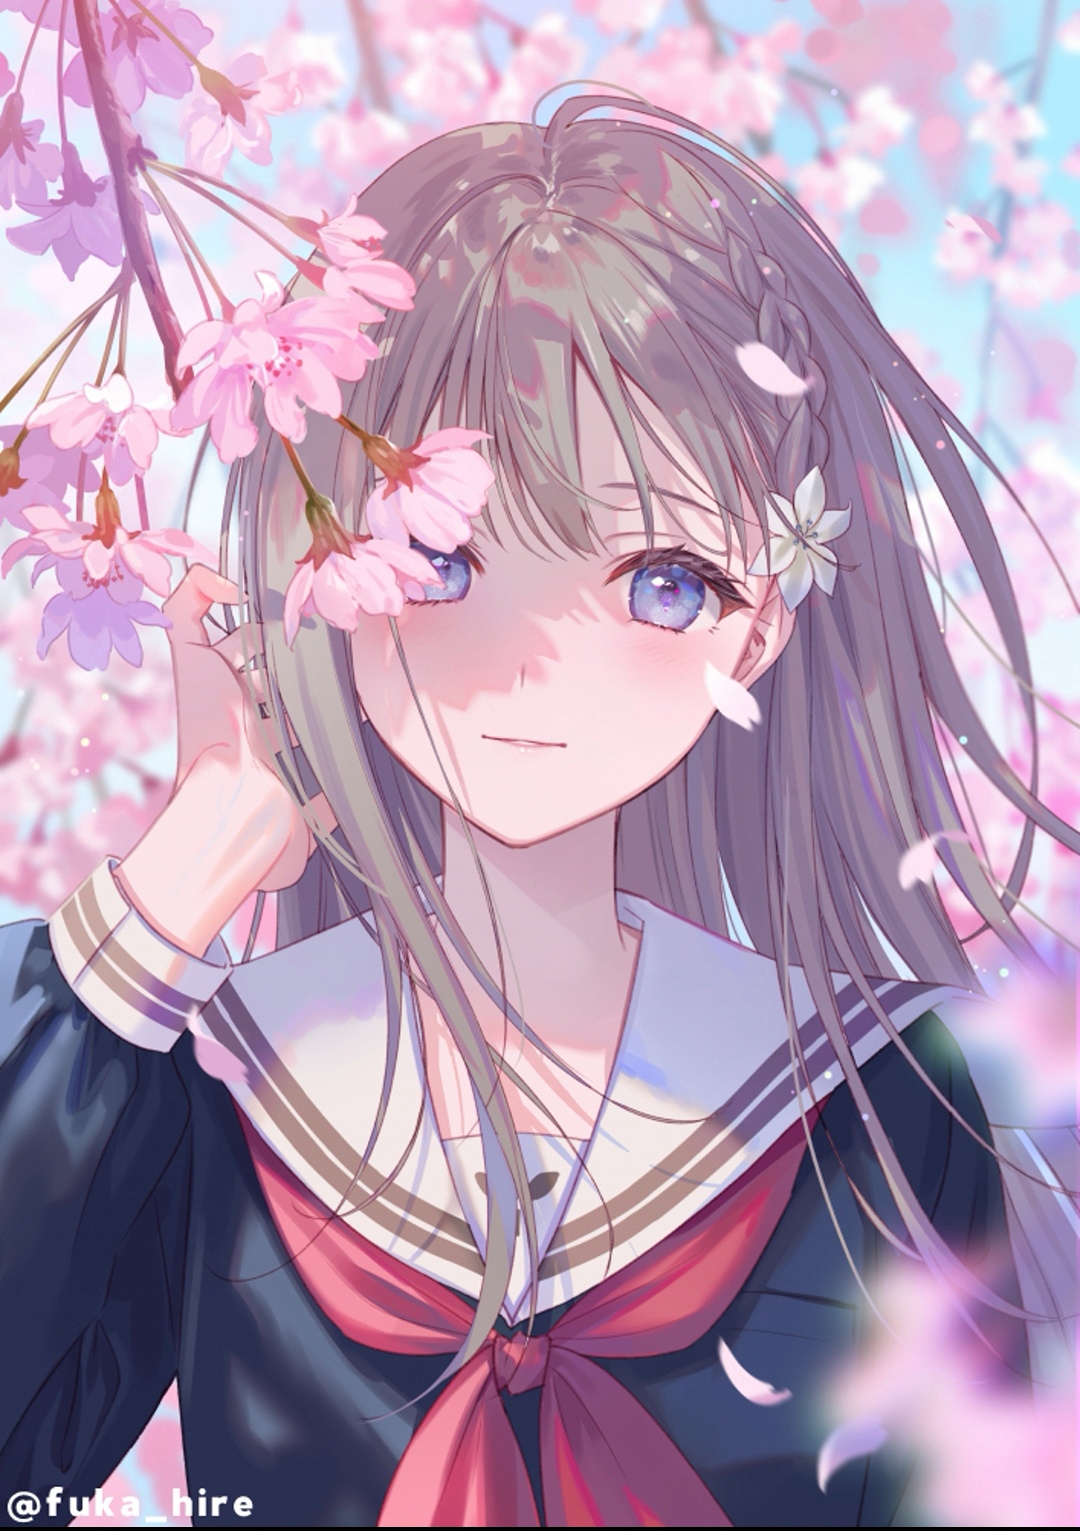 Cherry blossom anime girl by MomokoTheArtist on DeviantArt